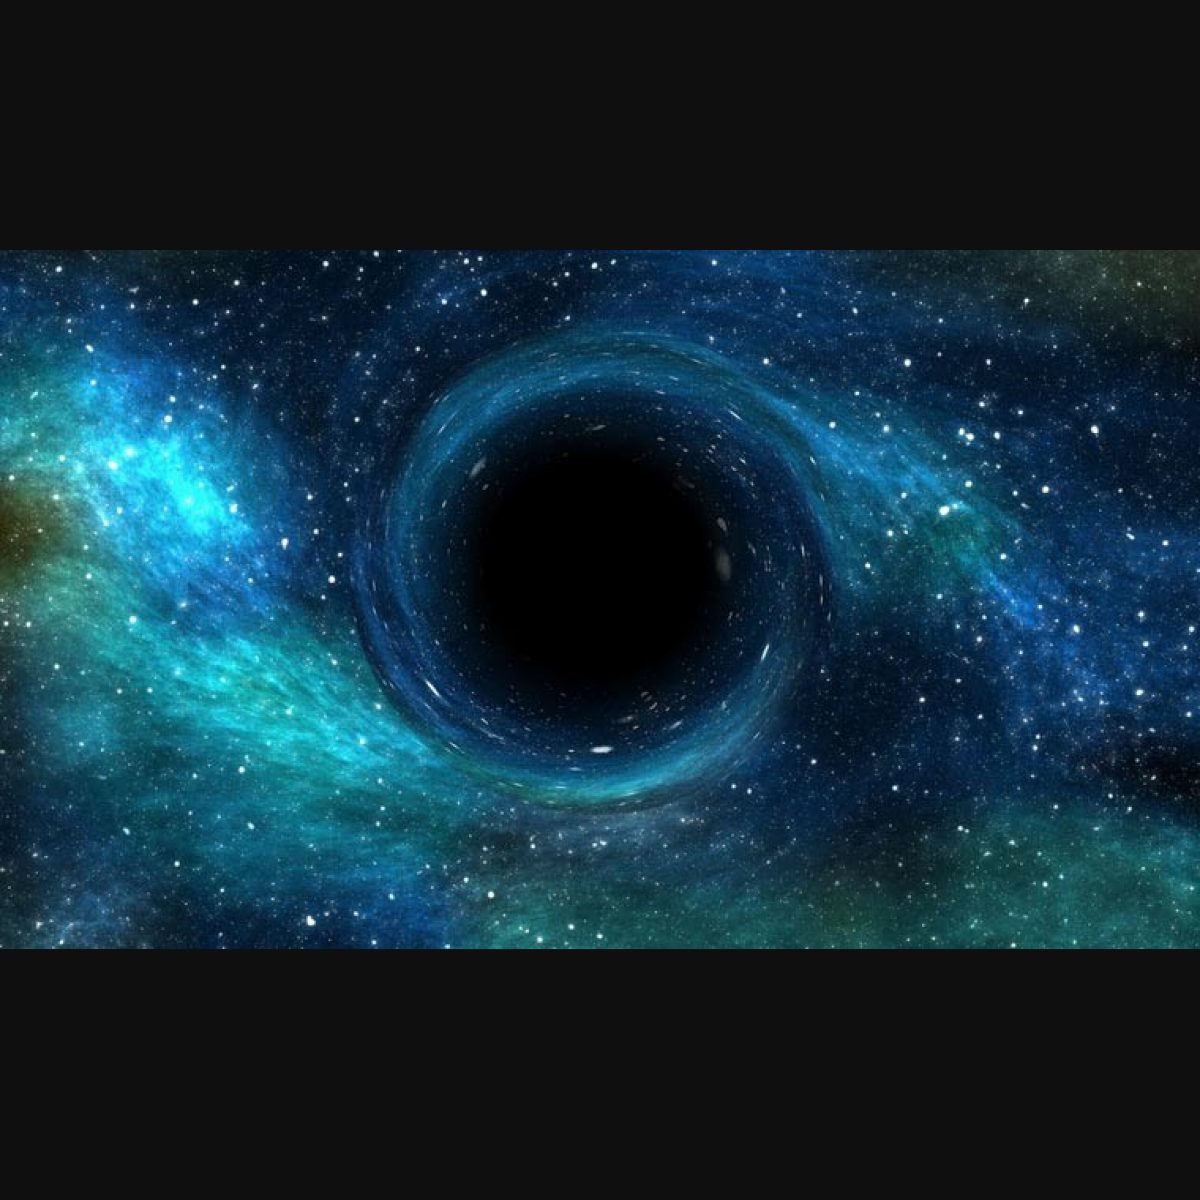 Black Hole Wallpaper From 'Interstellar' | Black hole wallpaper, Space  pictures, Interstellar